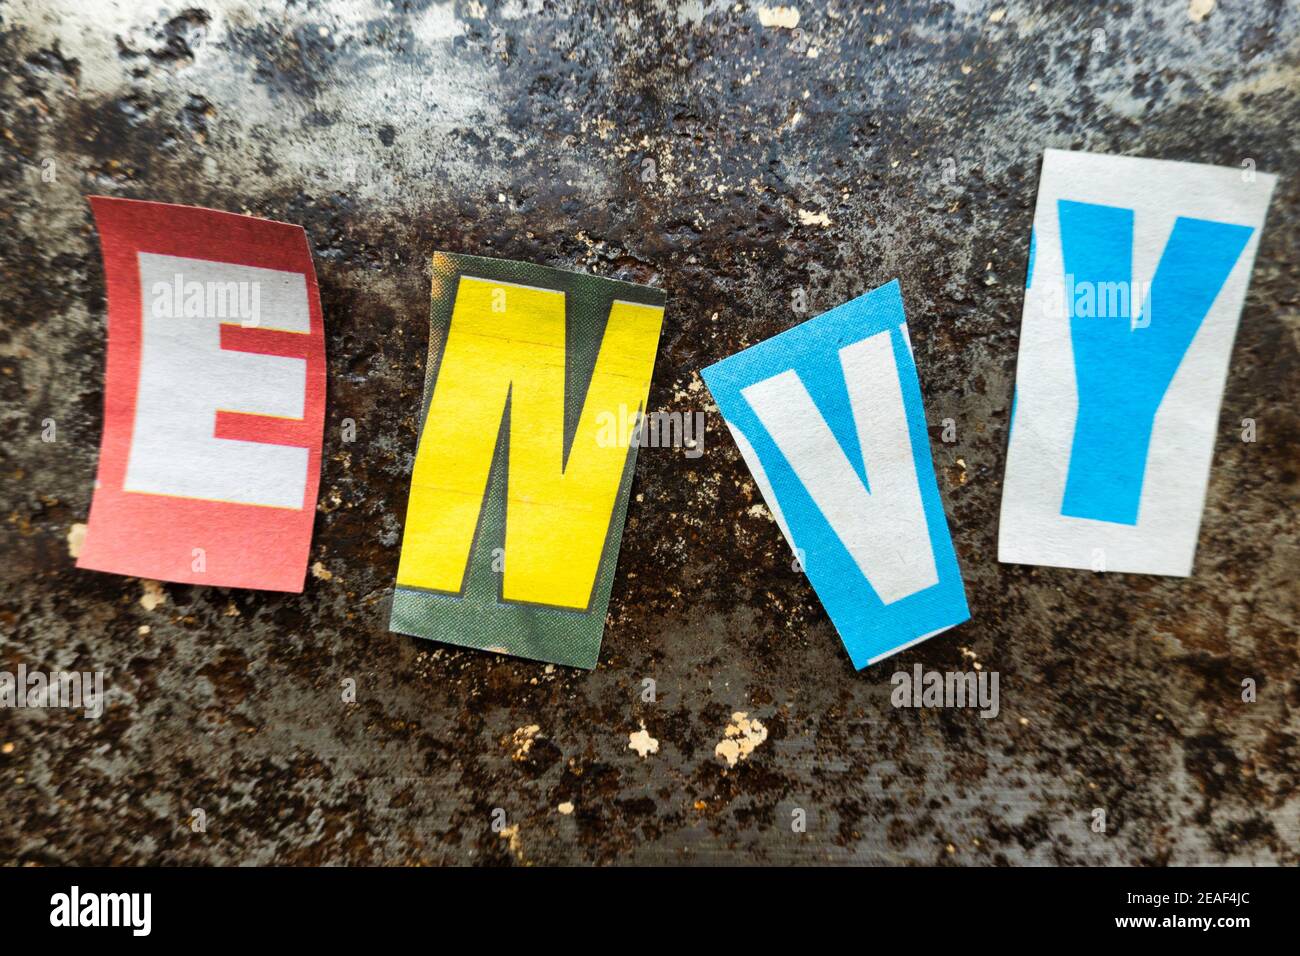 TheWord 'Envy' mit ausgeschnittenen Papierbuchstaben in der Lösegeld Note Effekt Typografie, USA Stockfoto